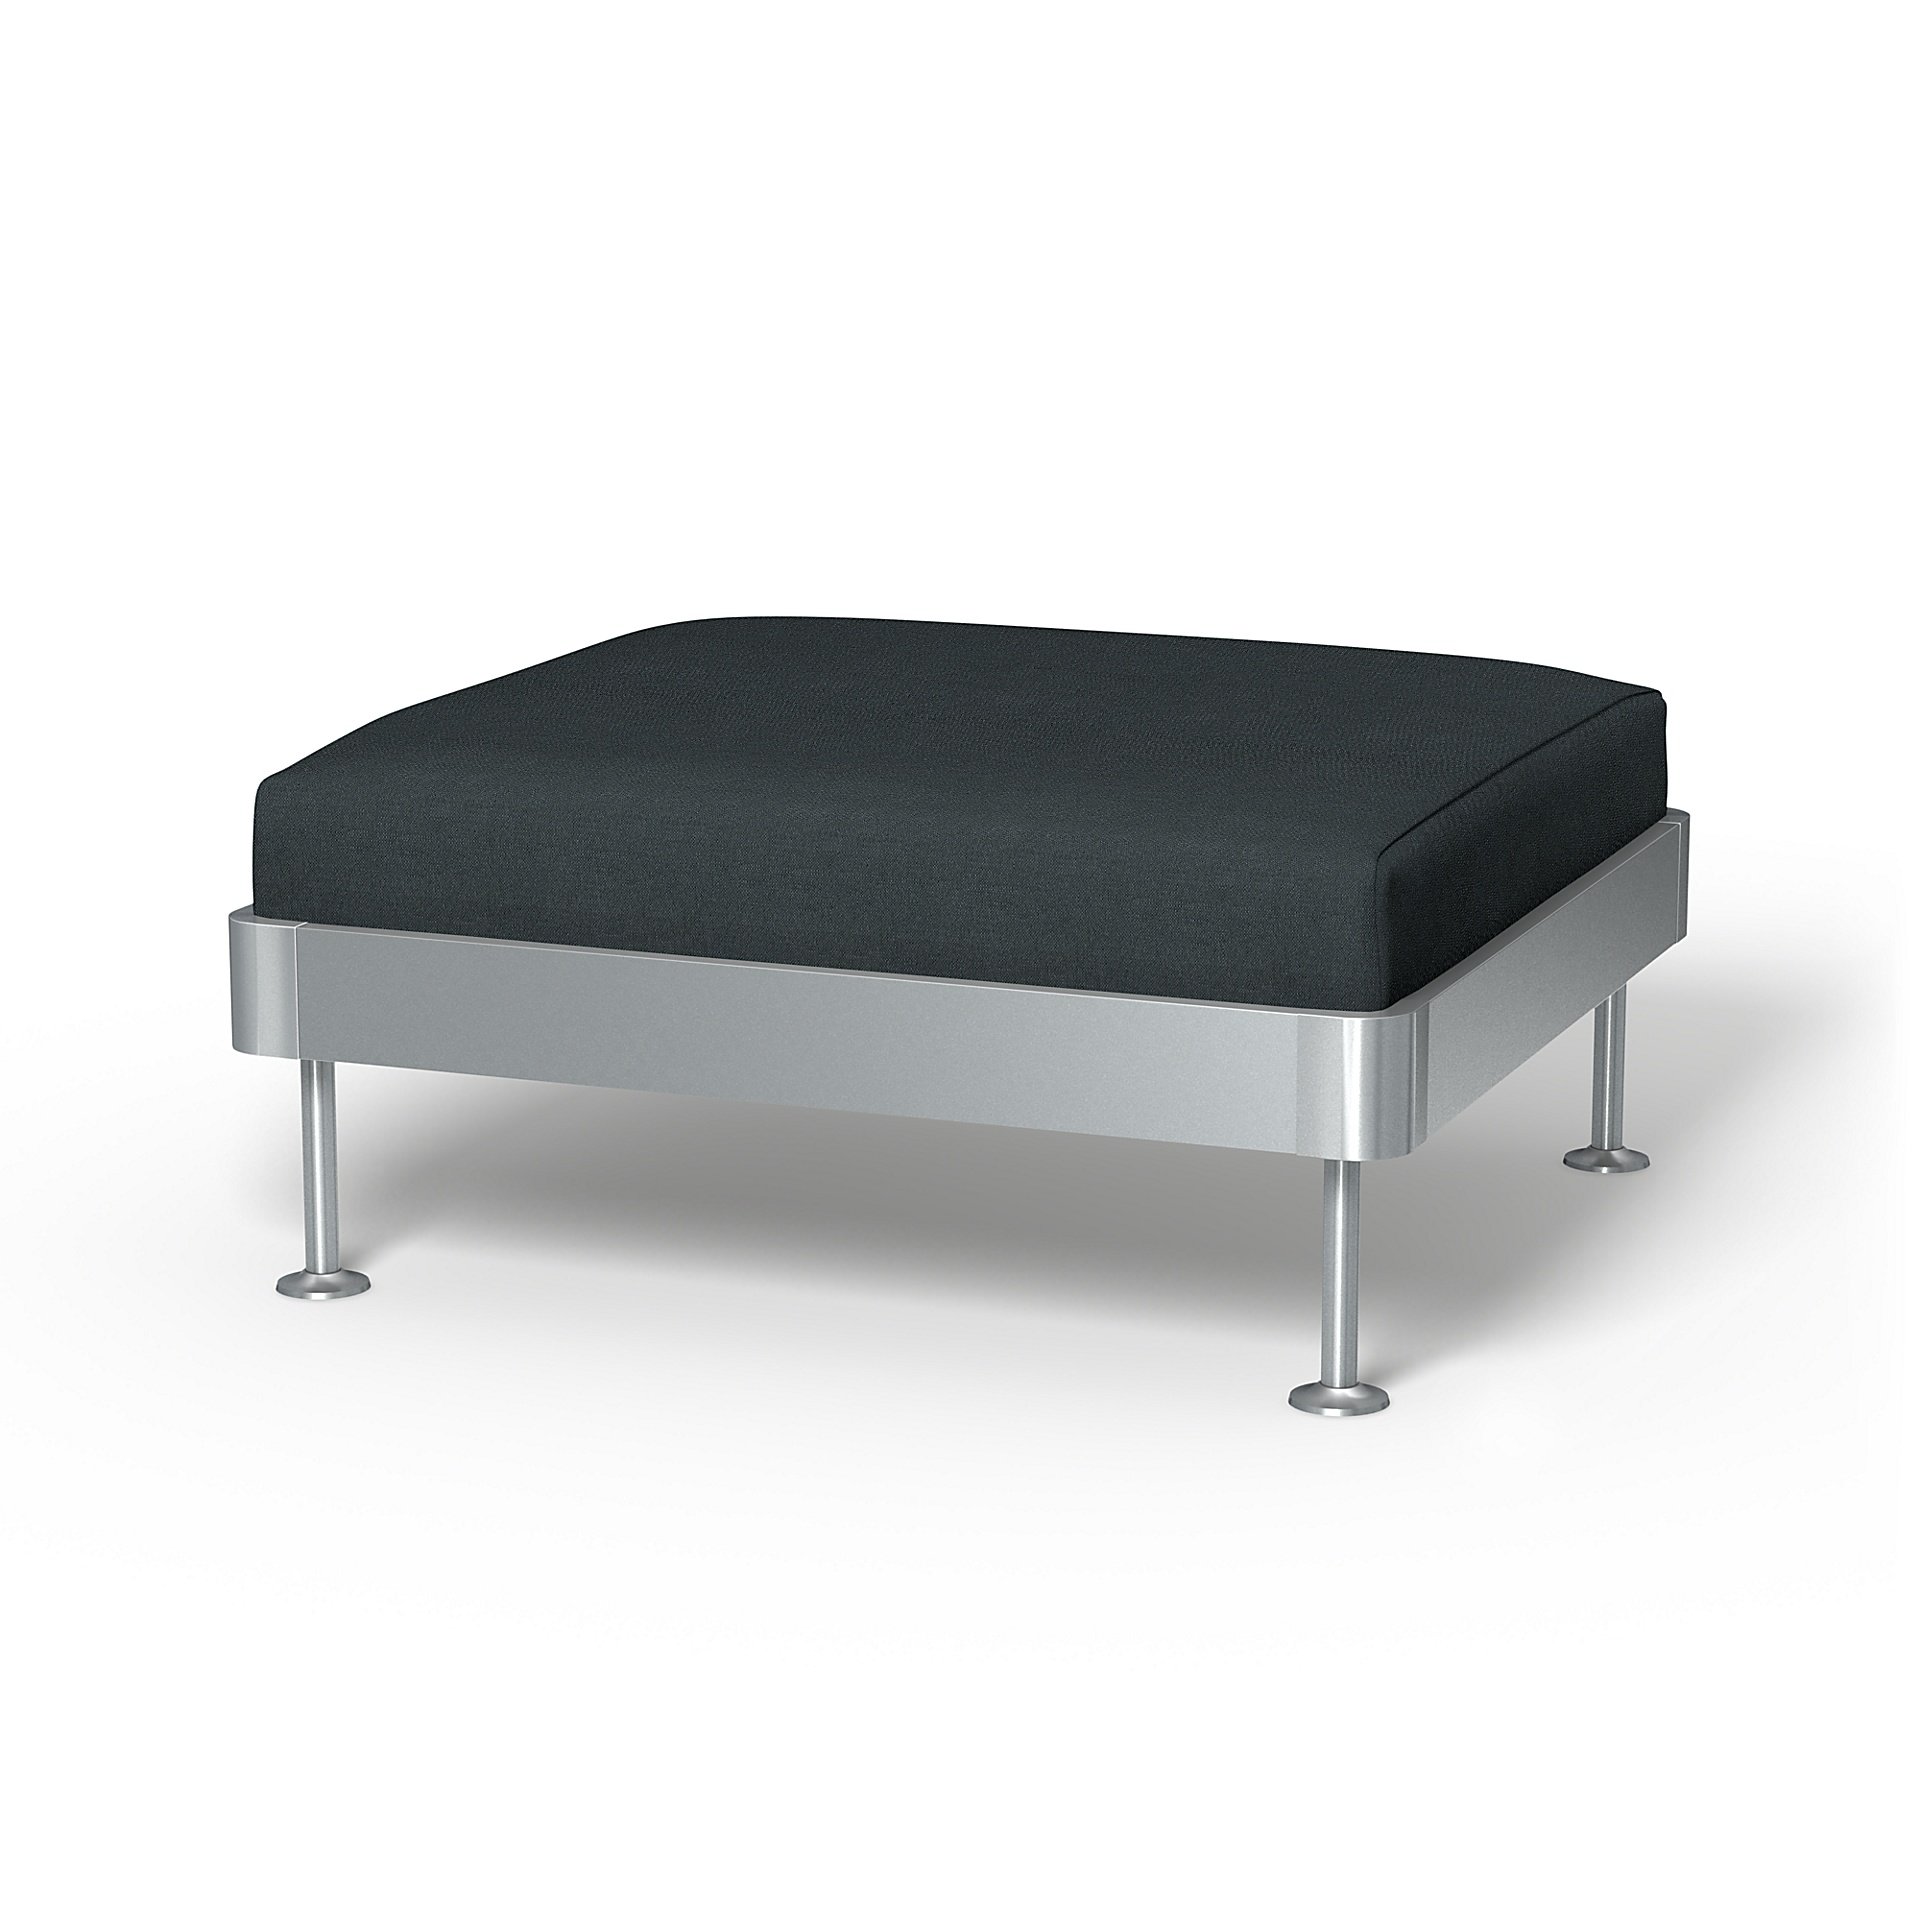 IKEA - Delaktig 1 Seat Platform Cover, Graphite Grey, Linen - Bemz